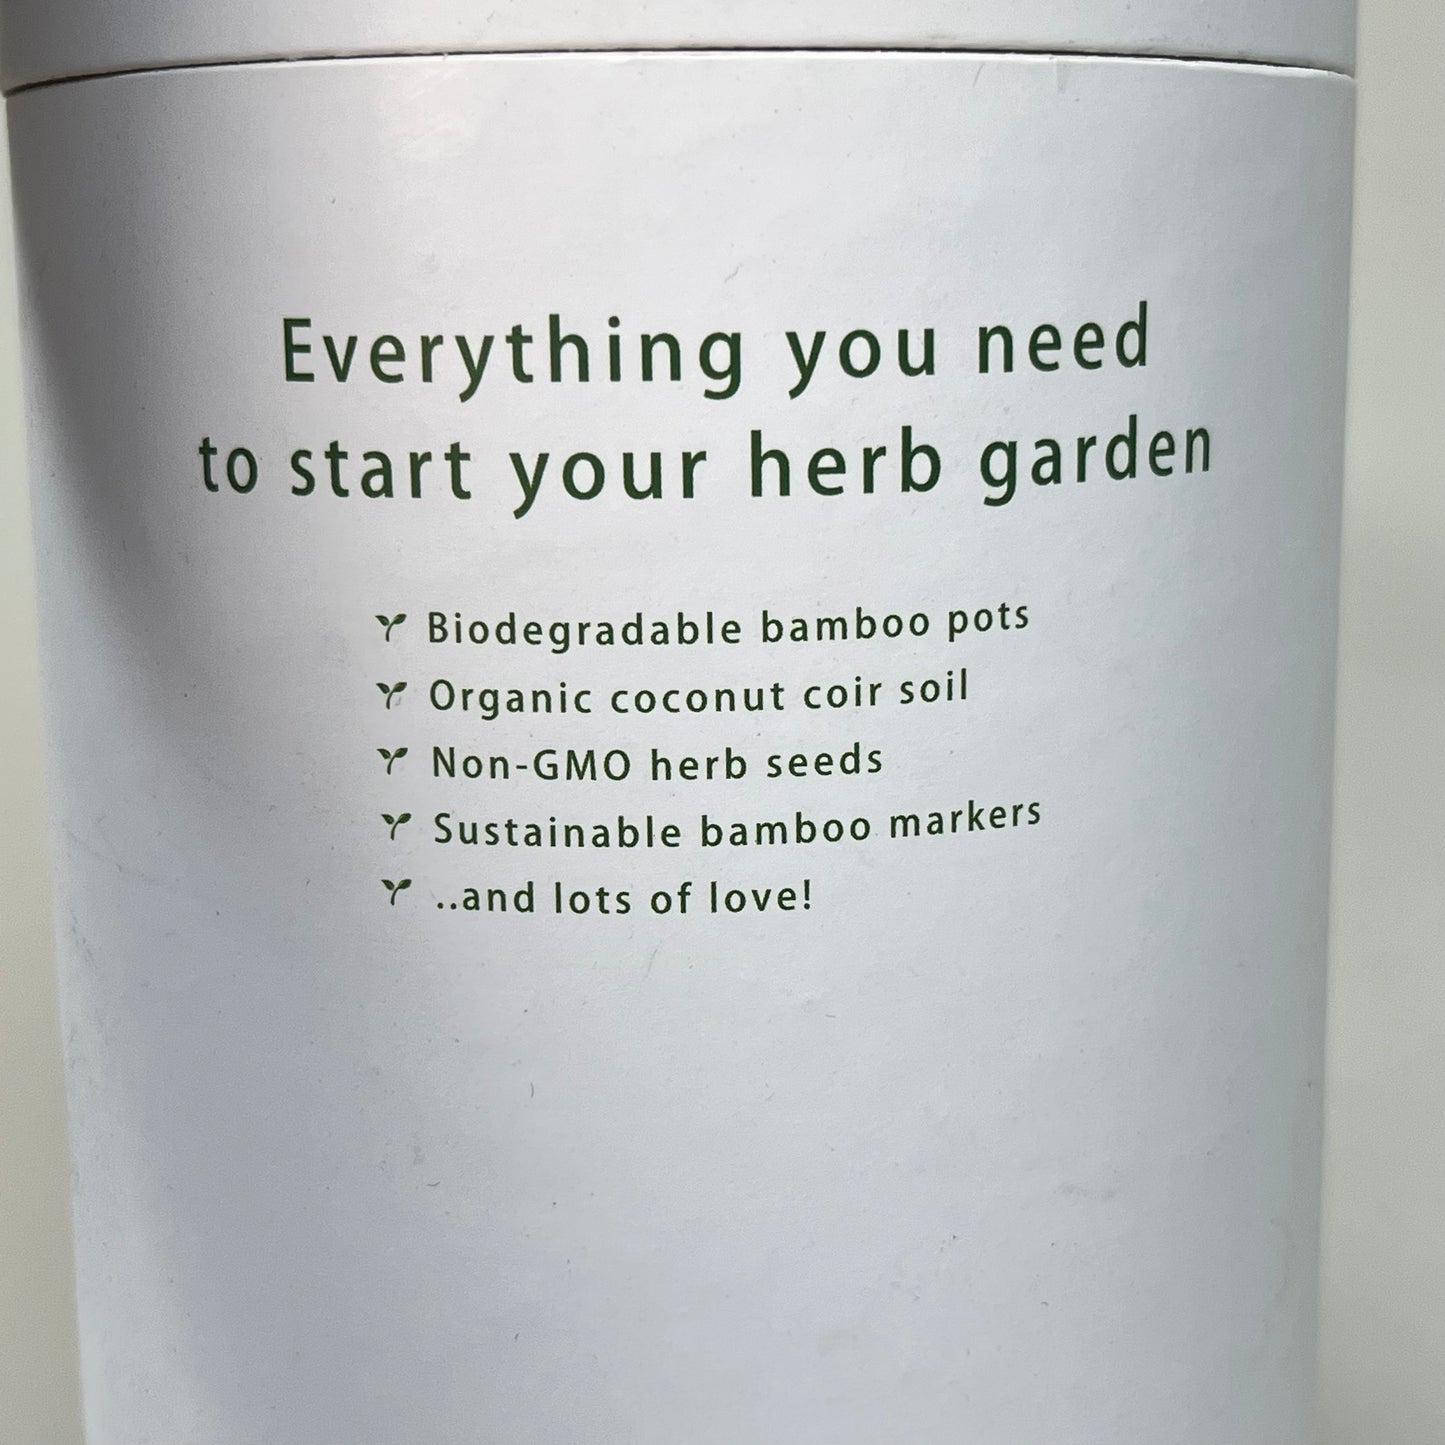 ZA@ ECO GARDNER Home Herb Garden Seed Starter Kit White